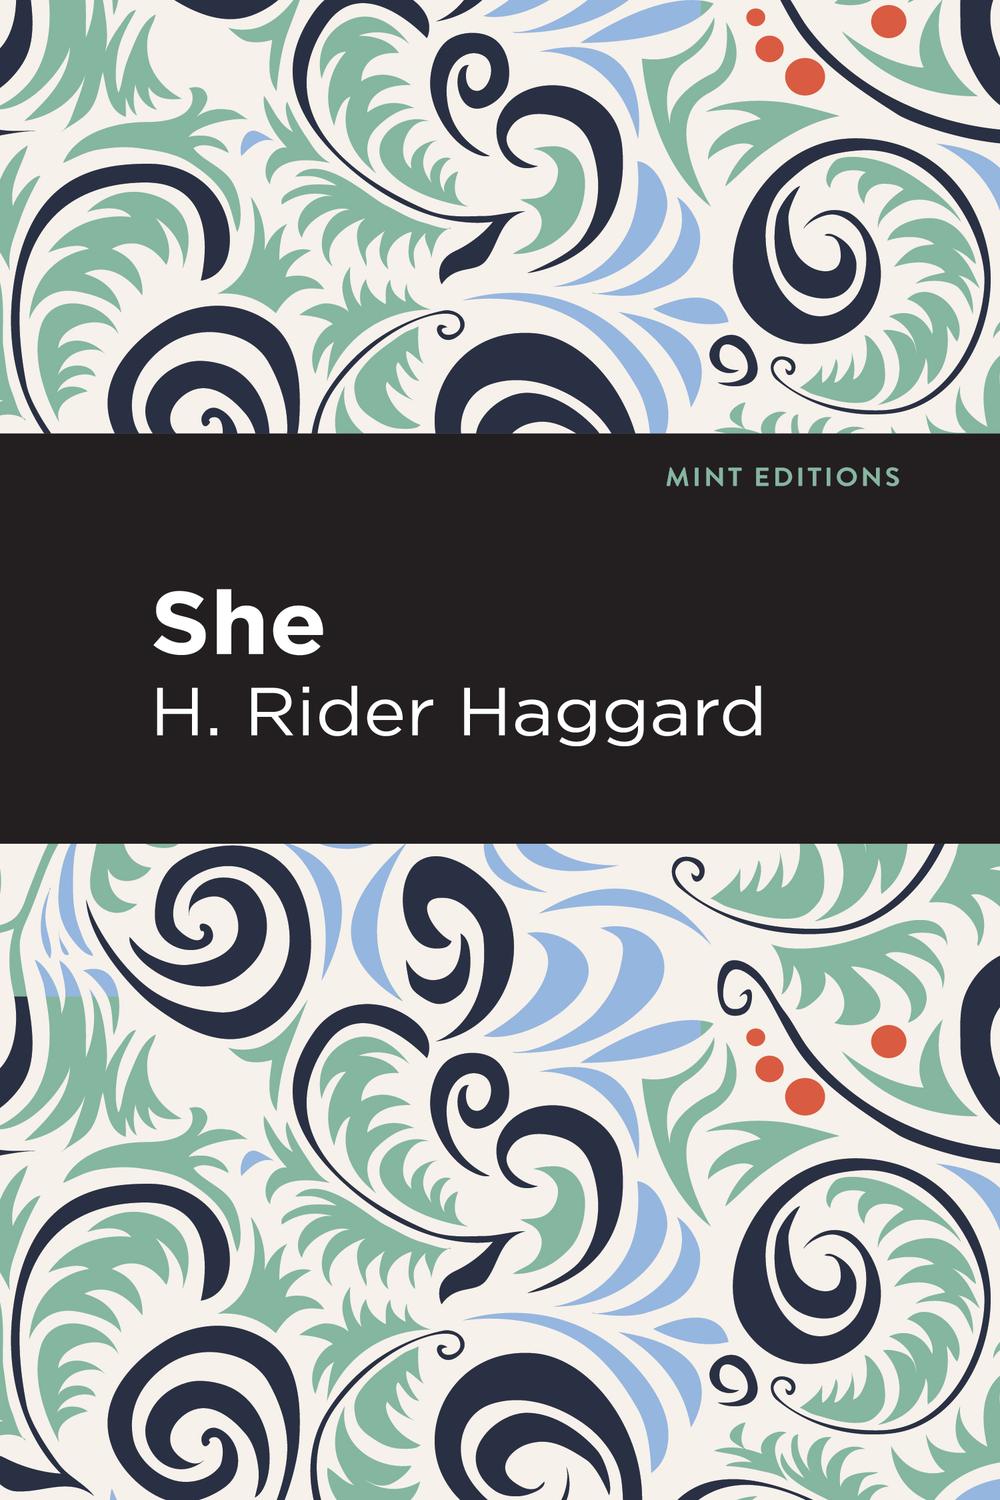 She - H. Rider Haggard,,